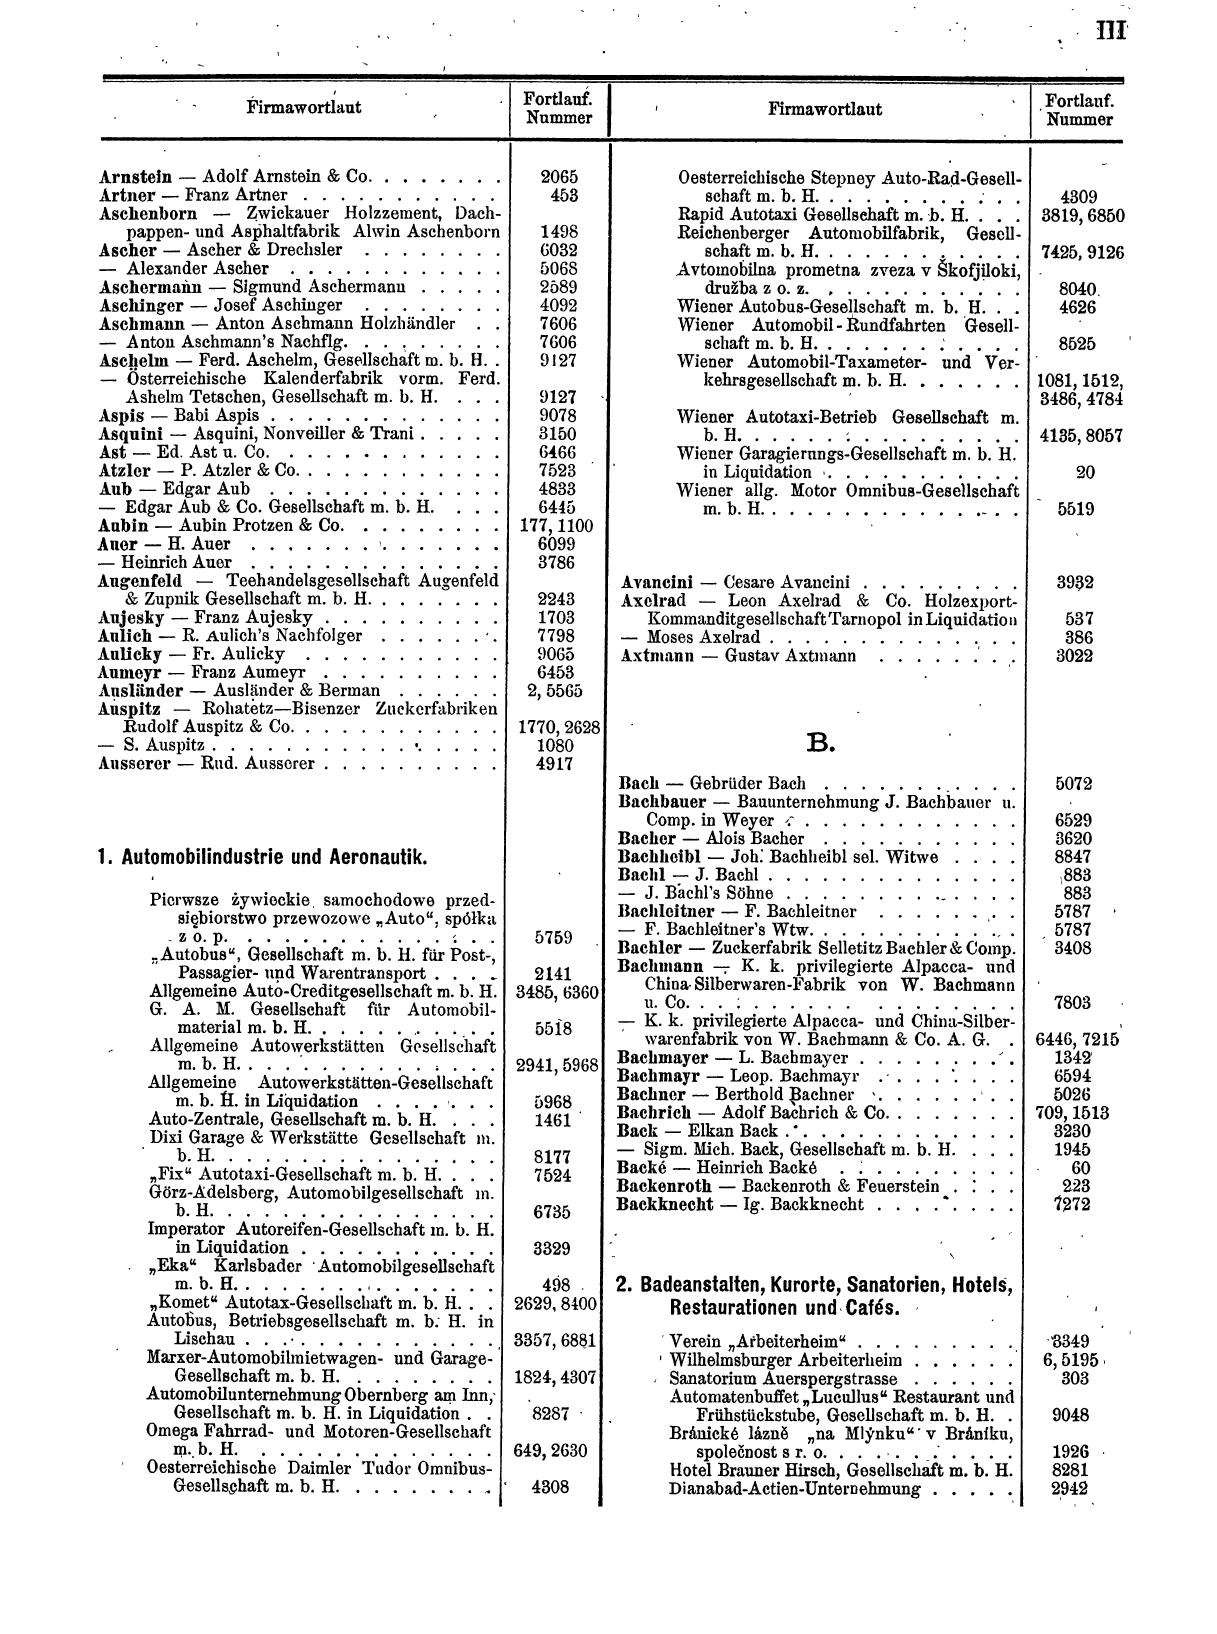 Zentralblatt für die Eintragungen in das Handelsregister 1913, Teil 1 - Seite 11